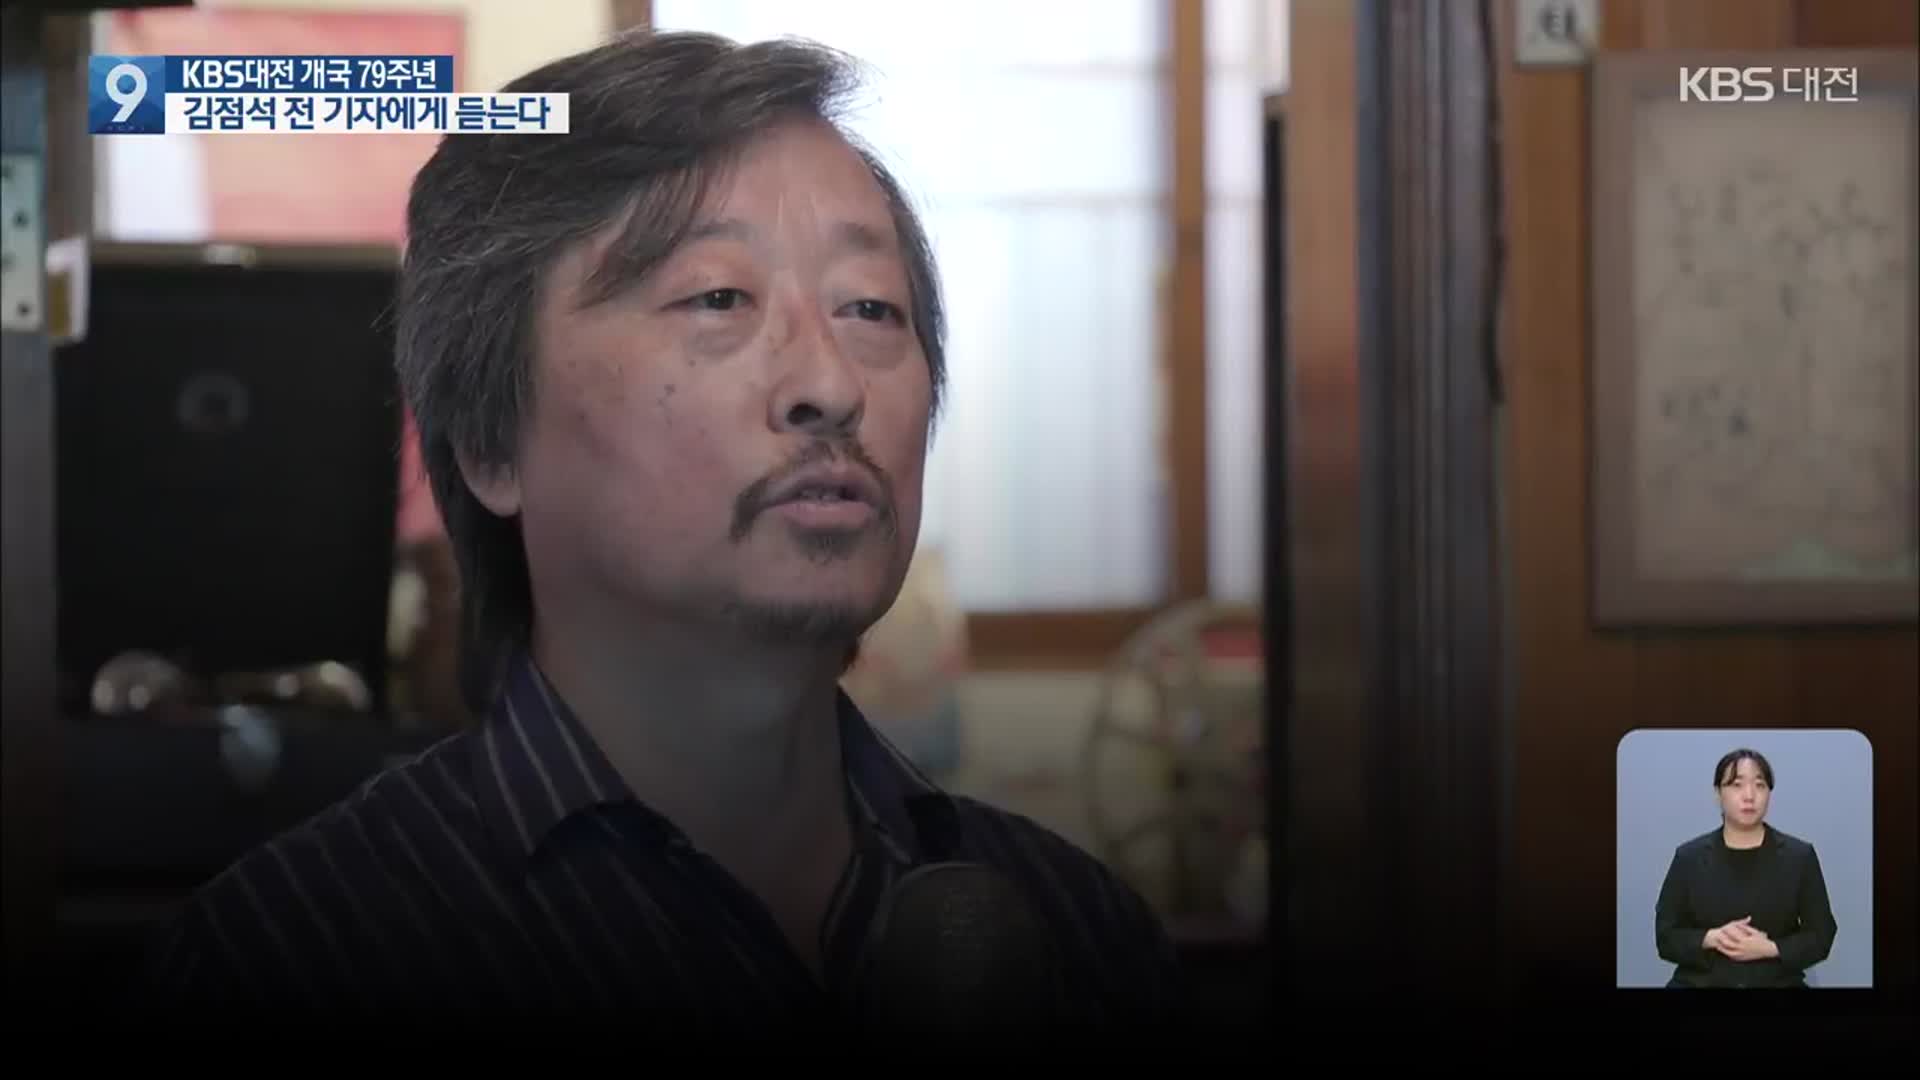 KBS대전 79년…김점석 전 기자에게 듣는다